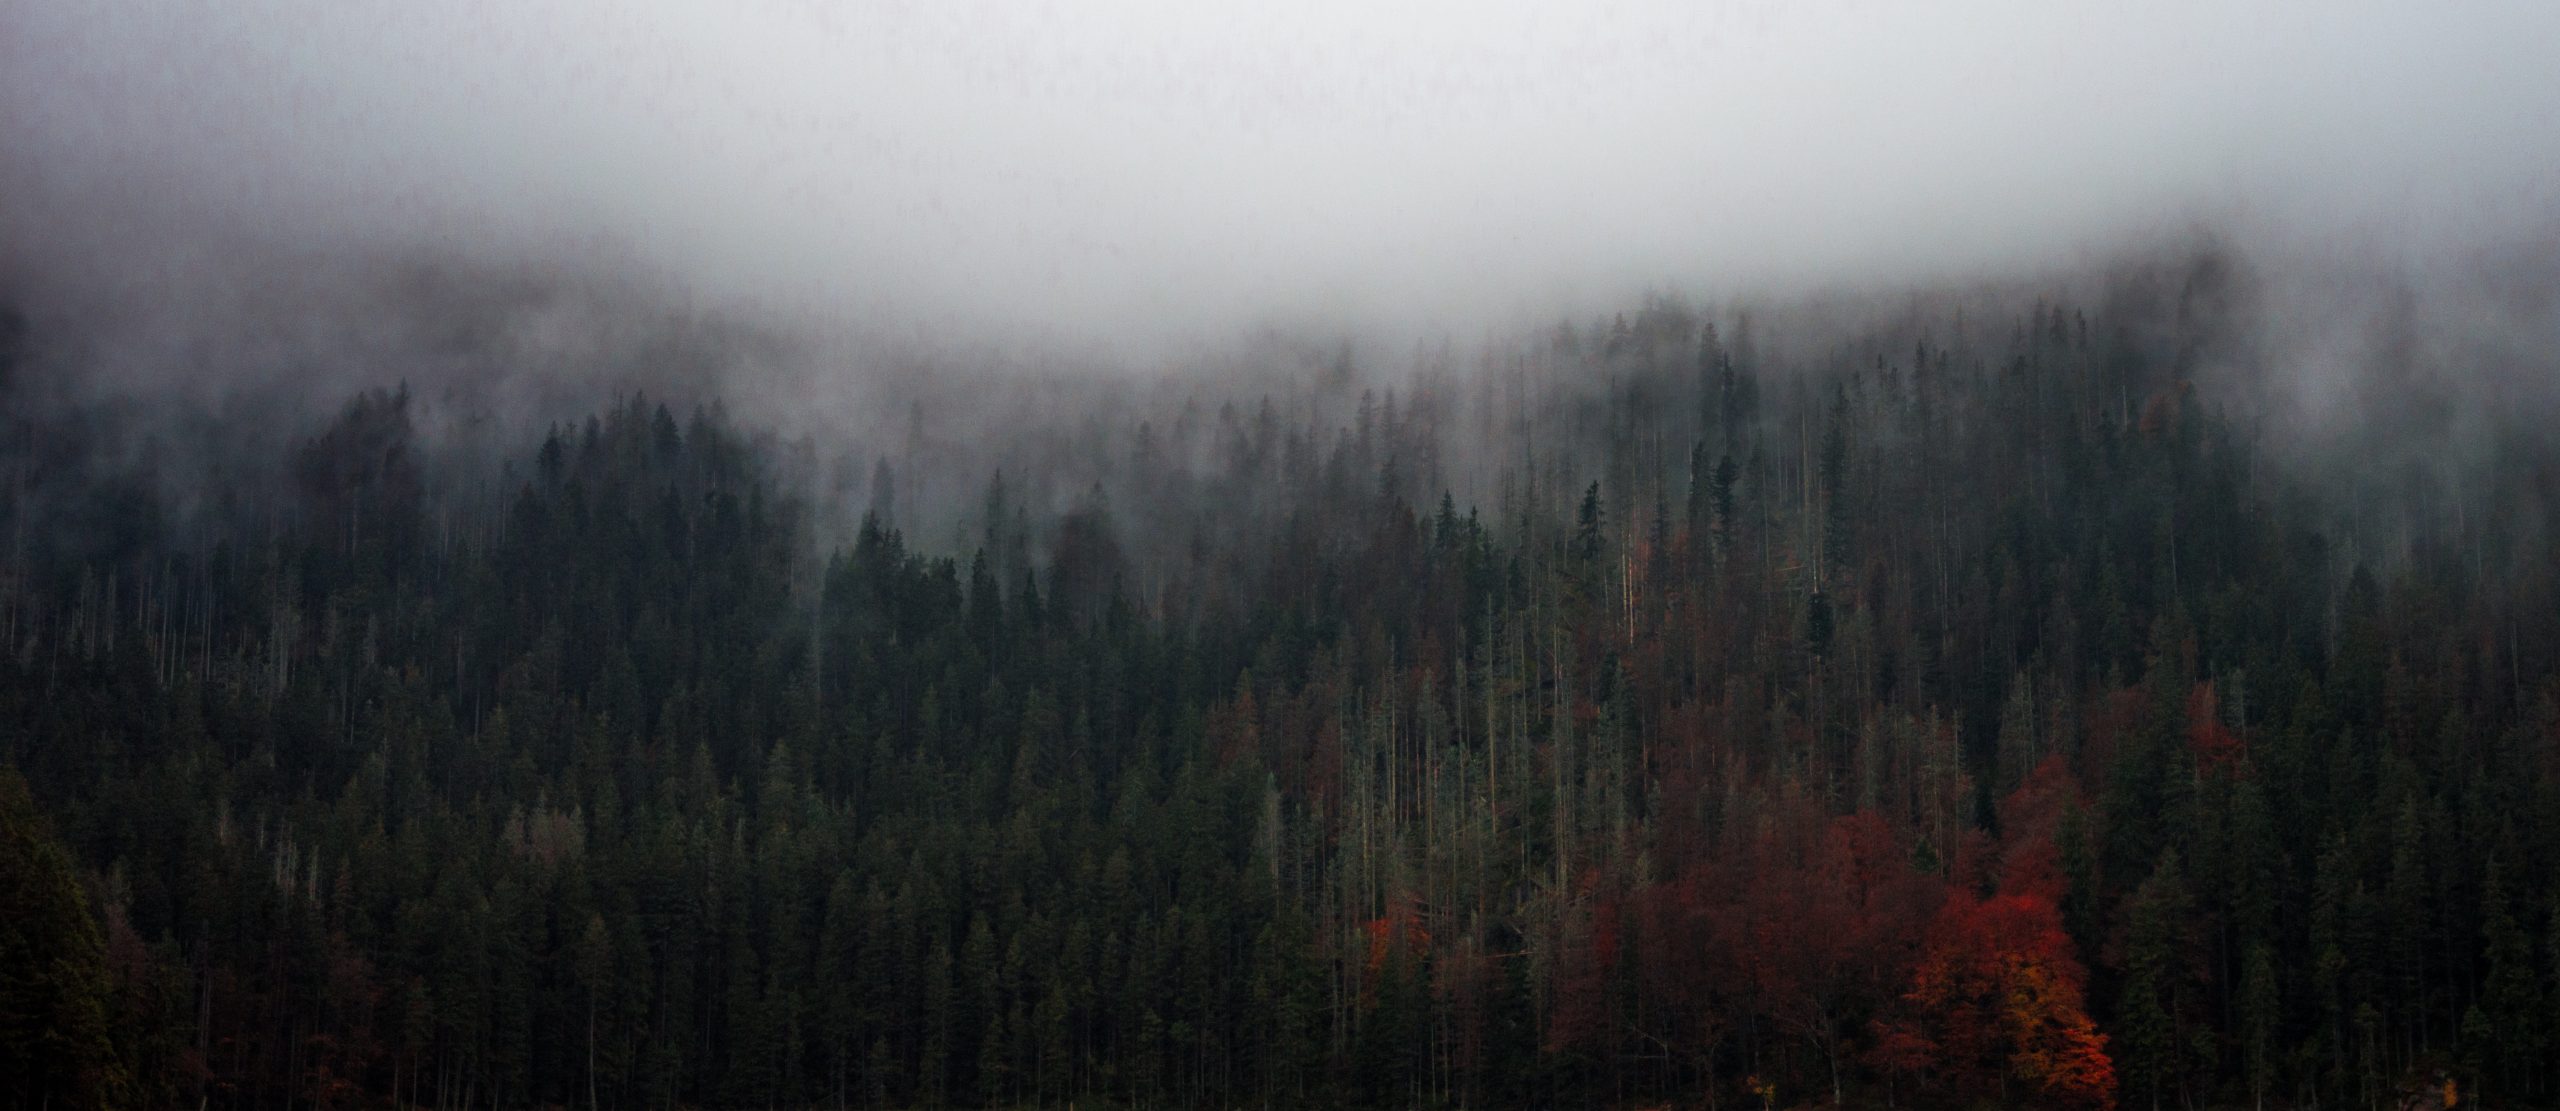 Wald mit Nebelschwaden, Bild im Artikel Jahreskreisfest Samhain<br />
Quelle: Unsplash / David Zvonar